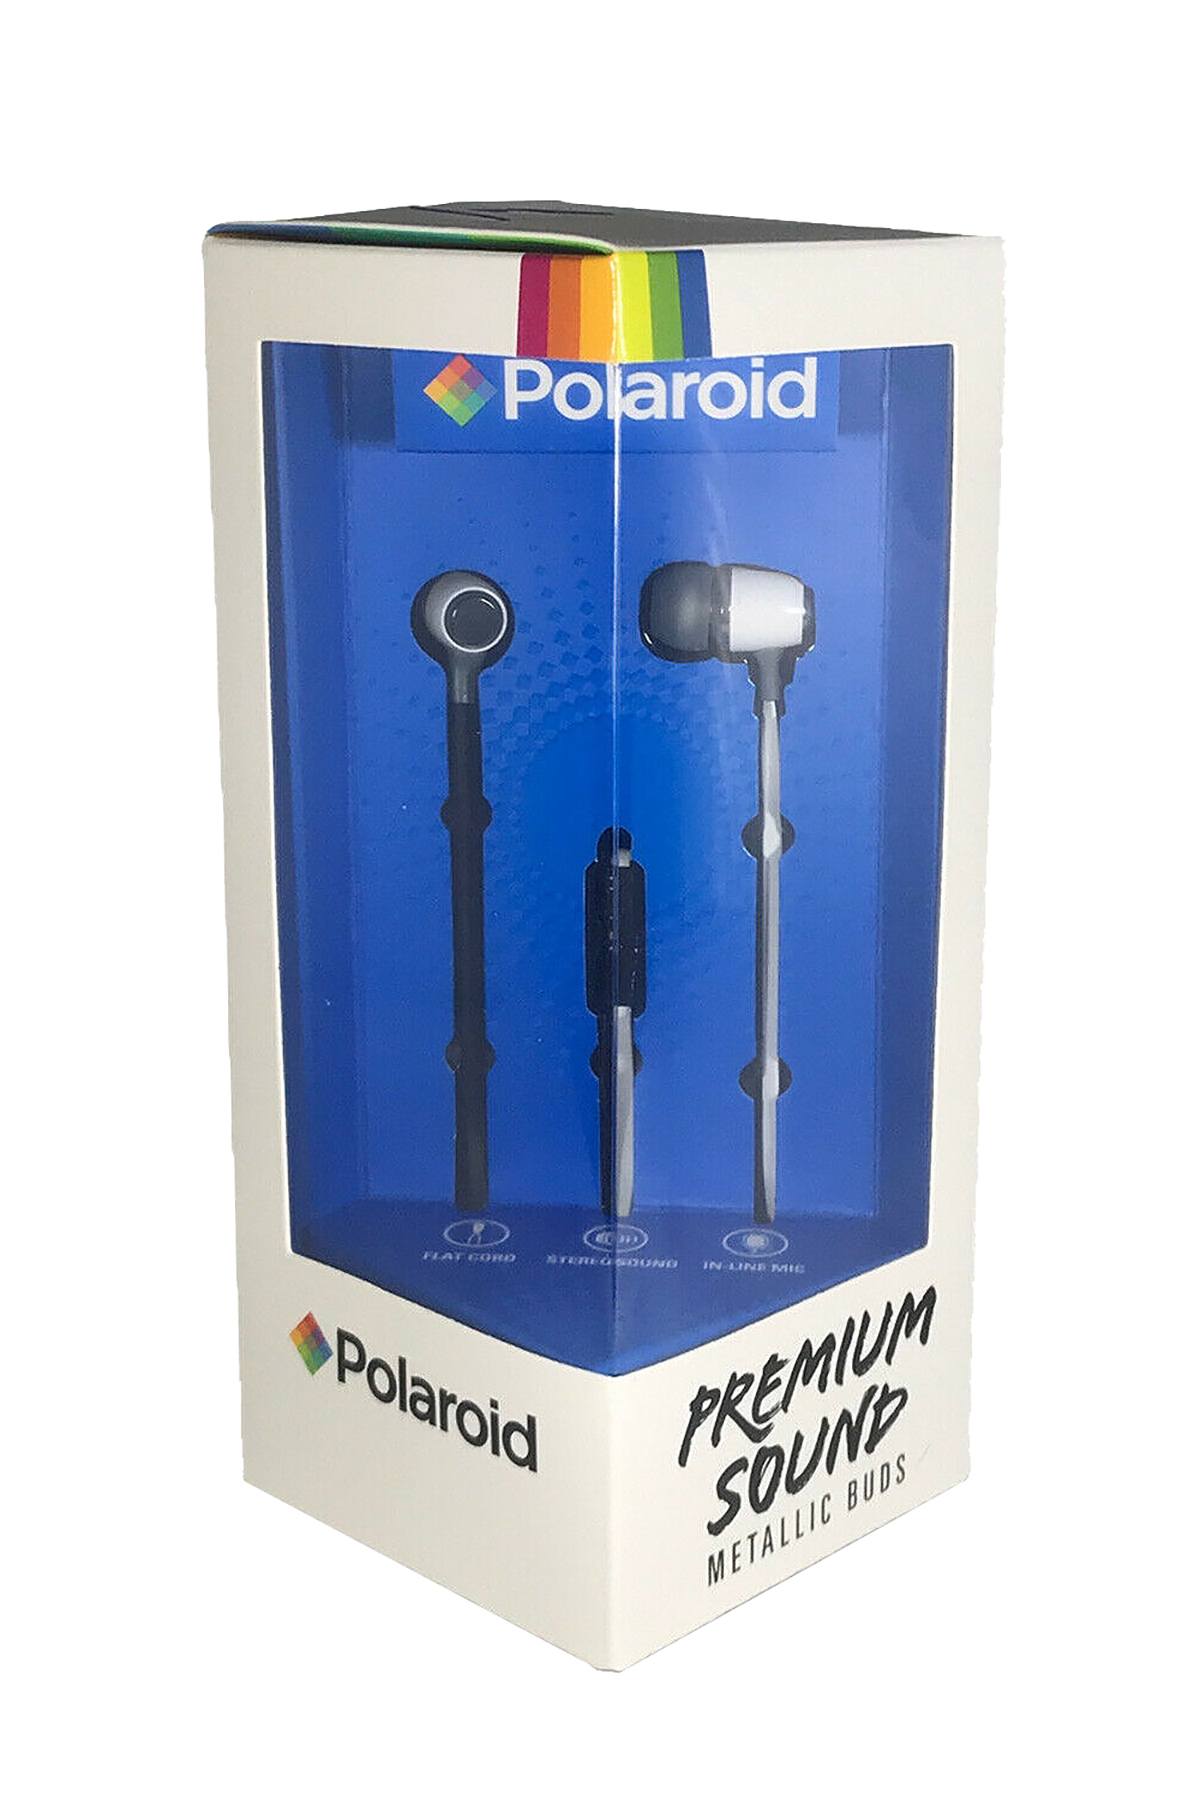 Polaroid White Metallic Premium Sound Earbuds with Microphone